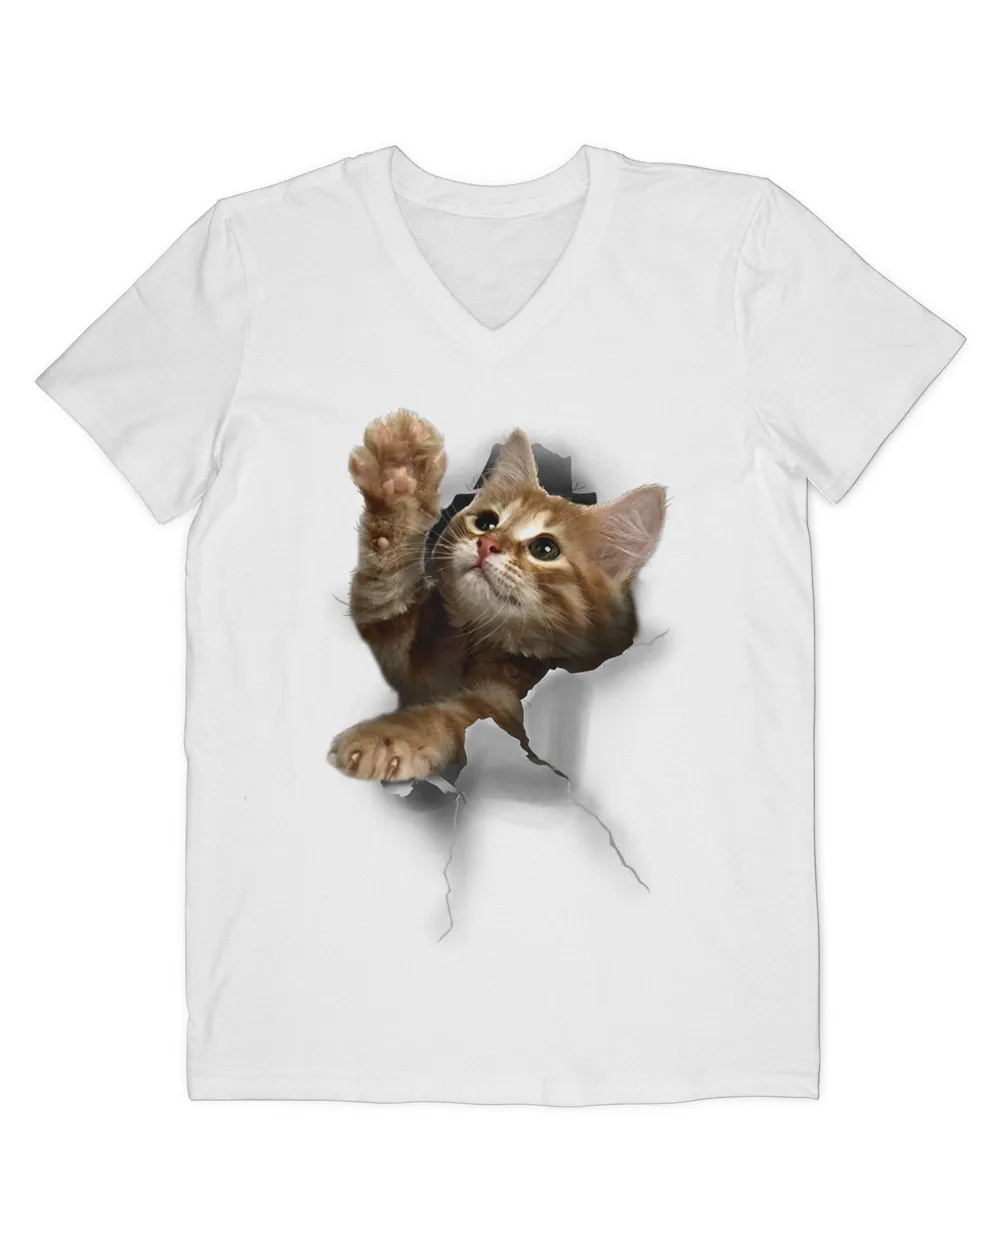 Lovely Kitten Cracked Wall T-Shirt Cats HOC010423A9